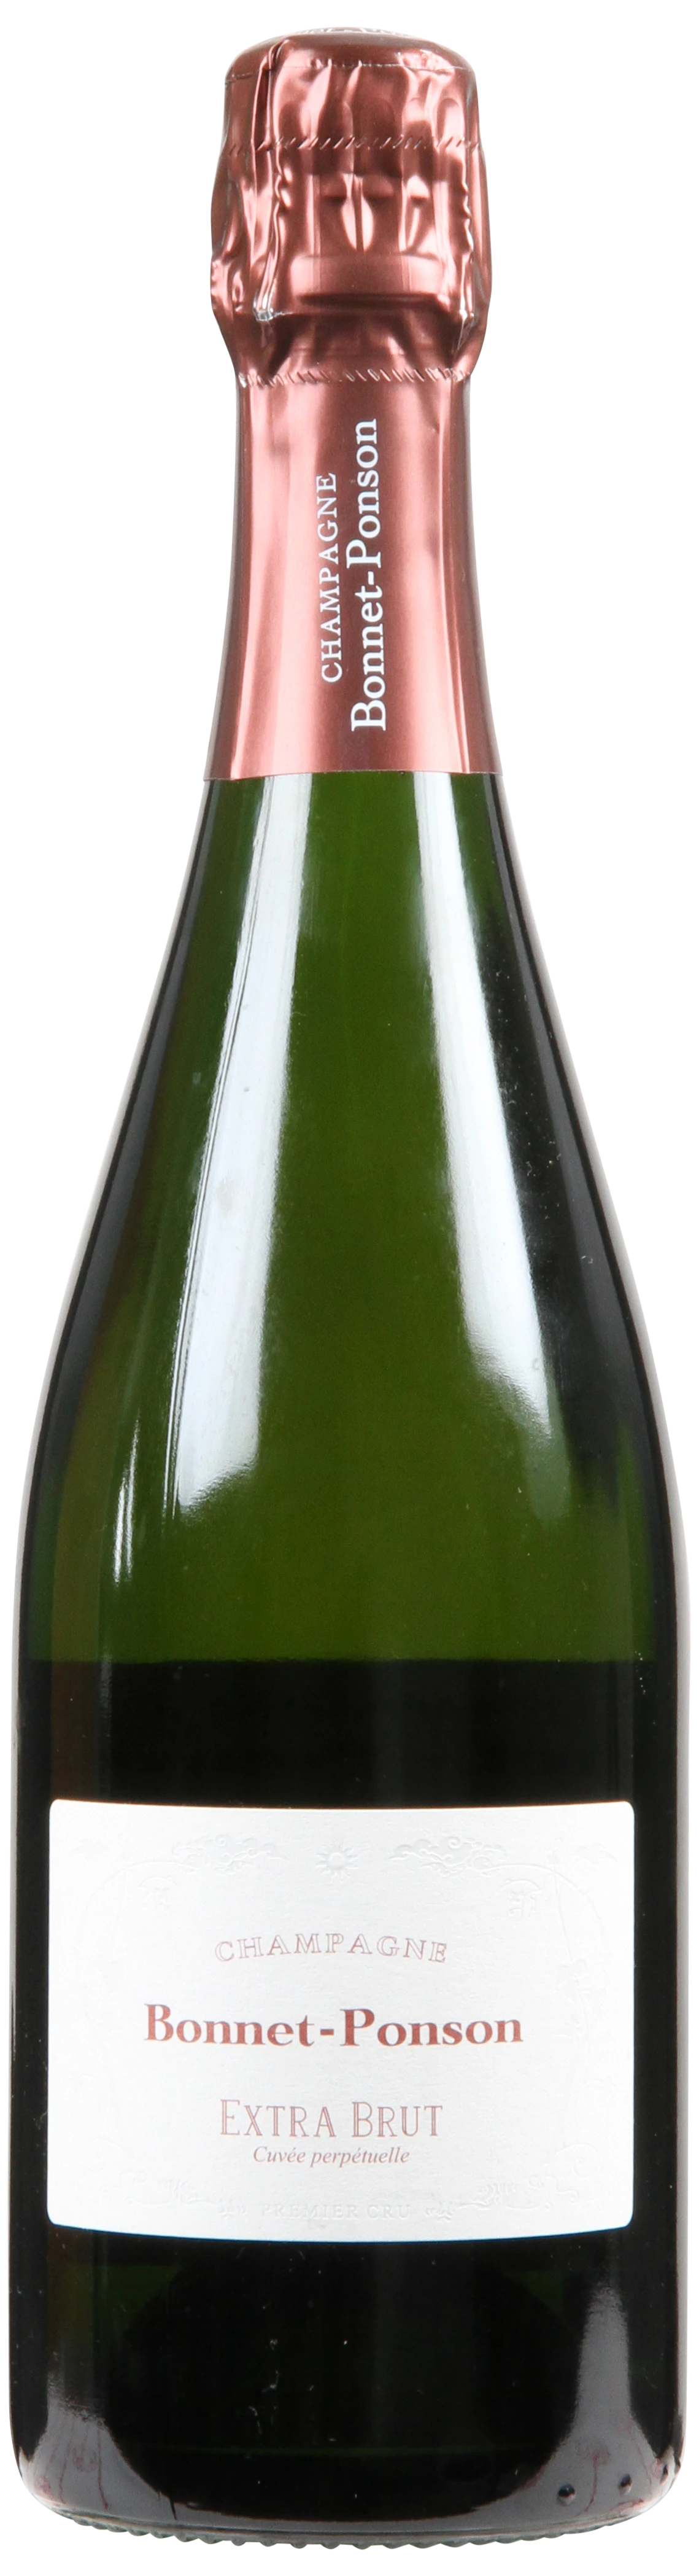 Løgismose Mousserende Bonnet-Ponson Champagne Extra Brut Cuvee Perpetuelle NV - 218981